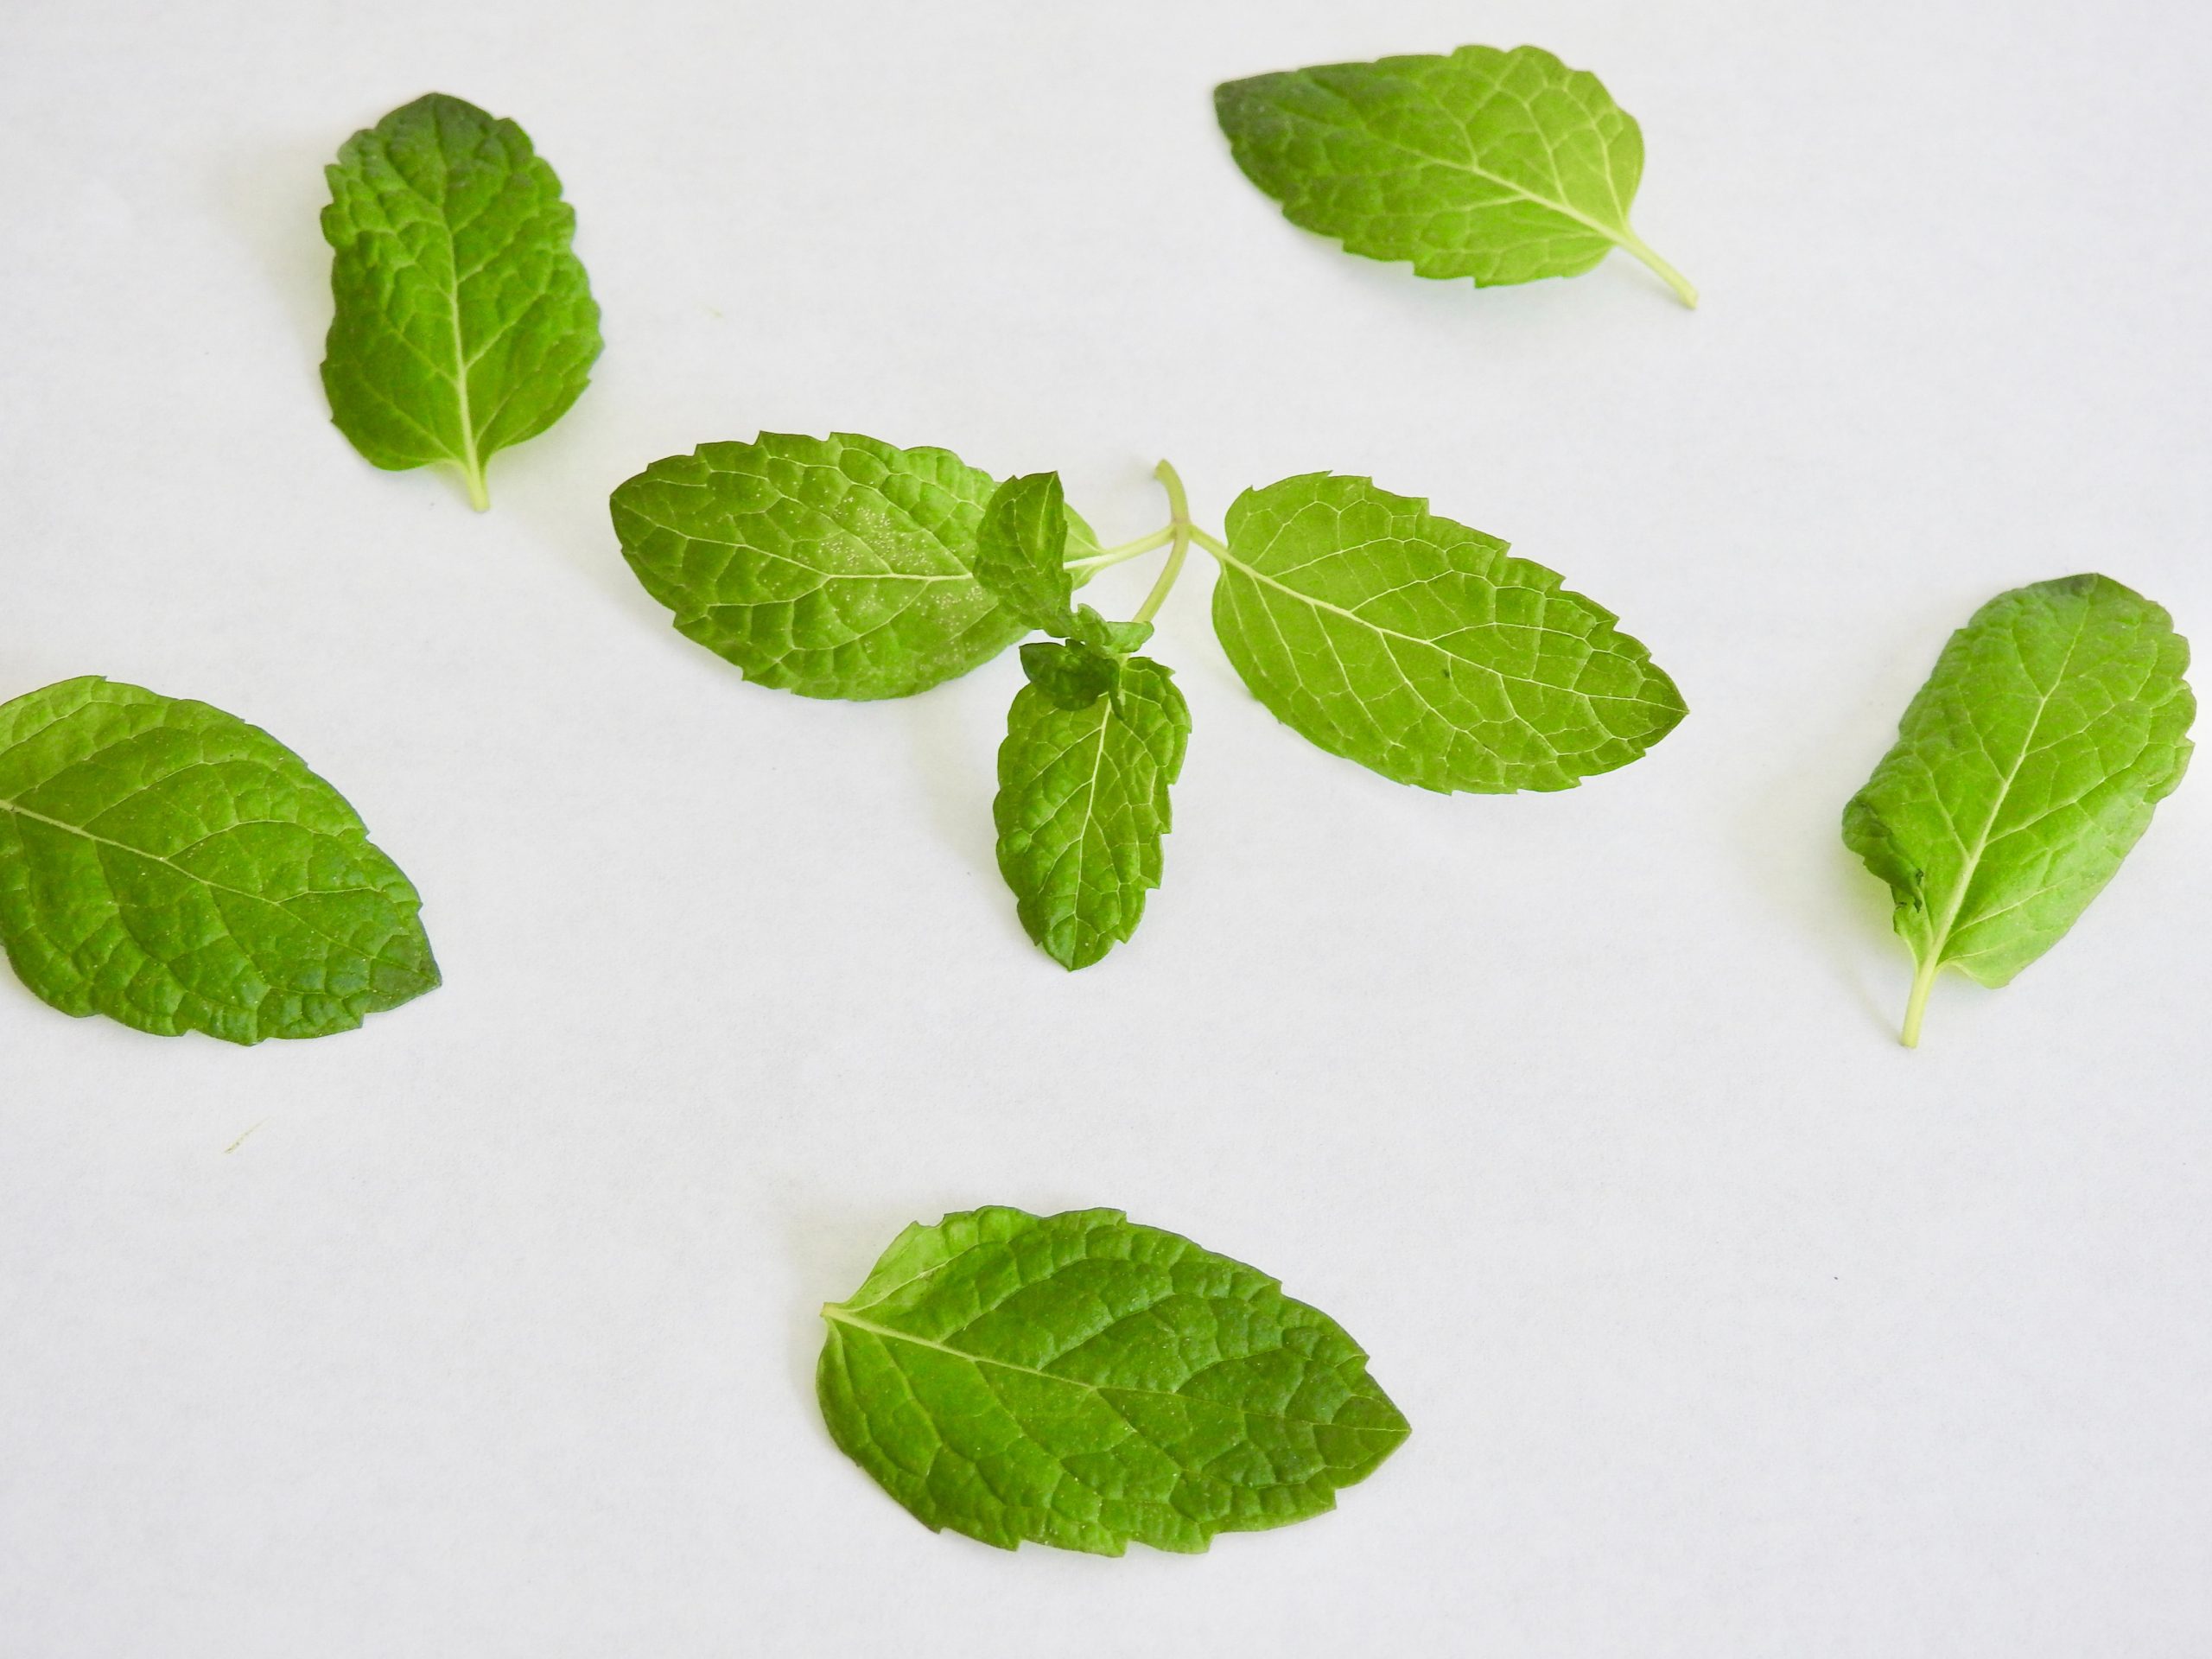 Quelques feuilles de menthe vertes sont présentées sur un fond blanc